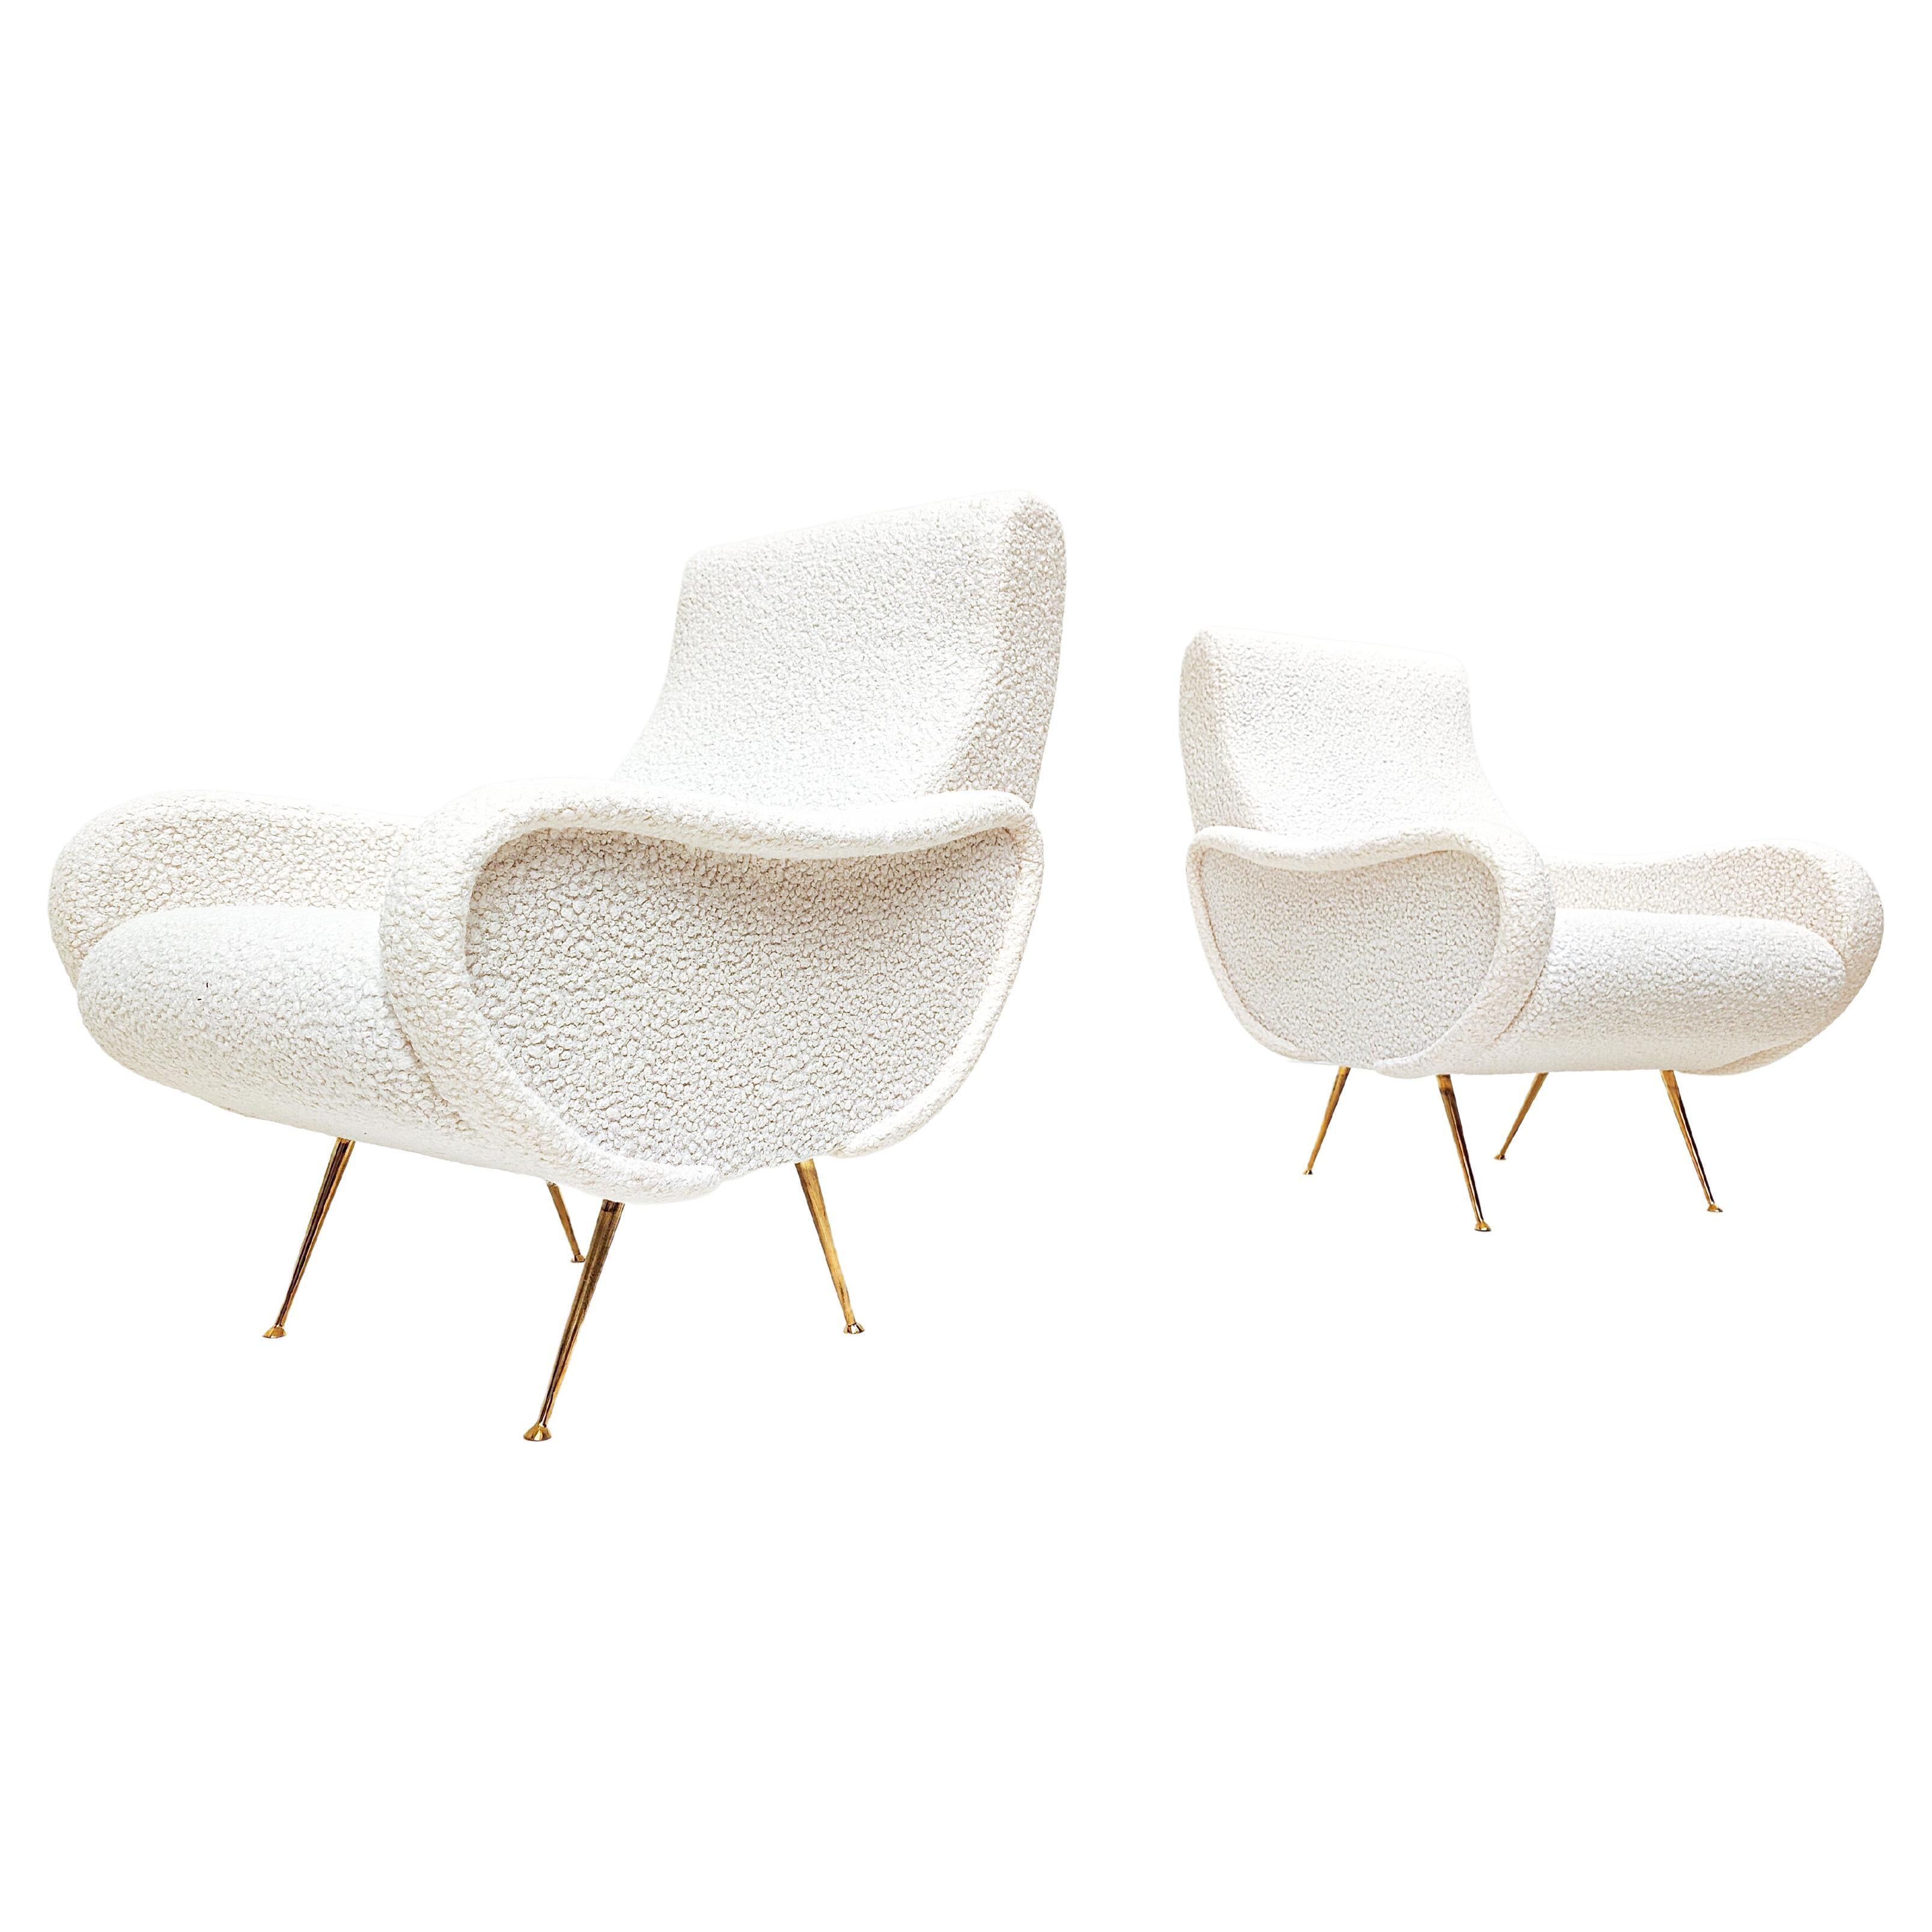 Paire de fauteuils italiens The Modernitys, tissu bouclé blanc, 1950s